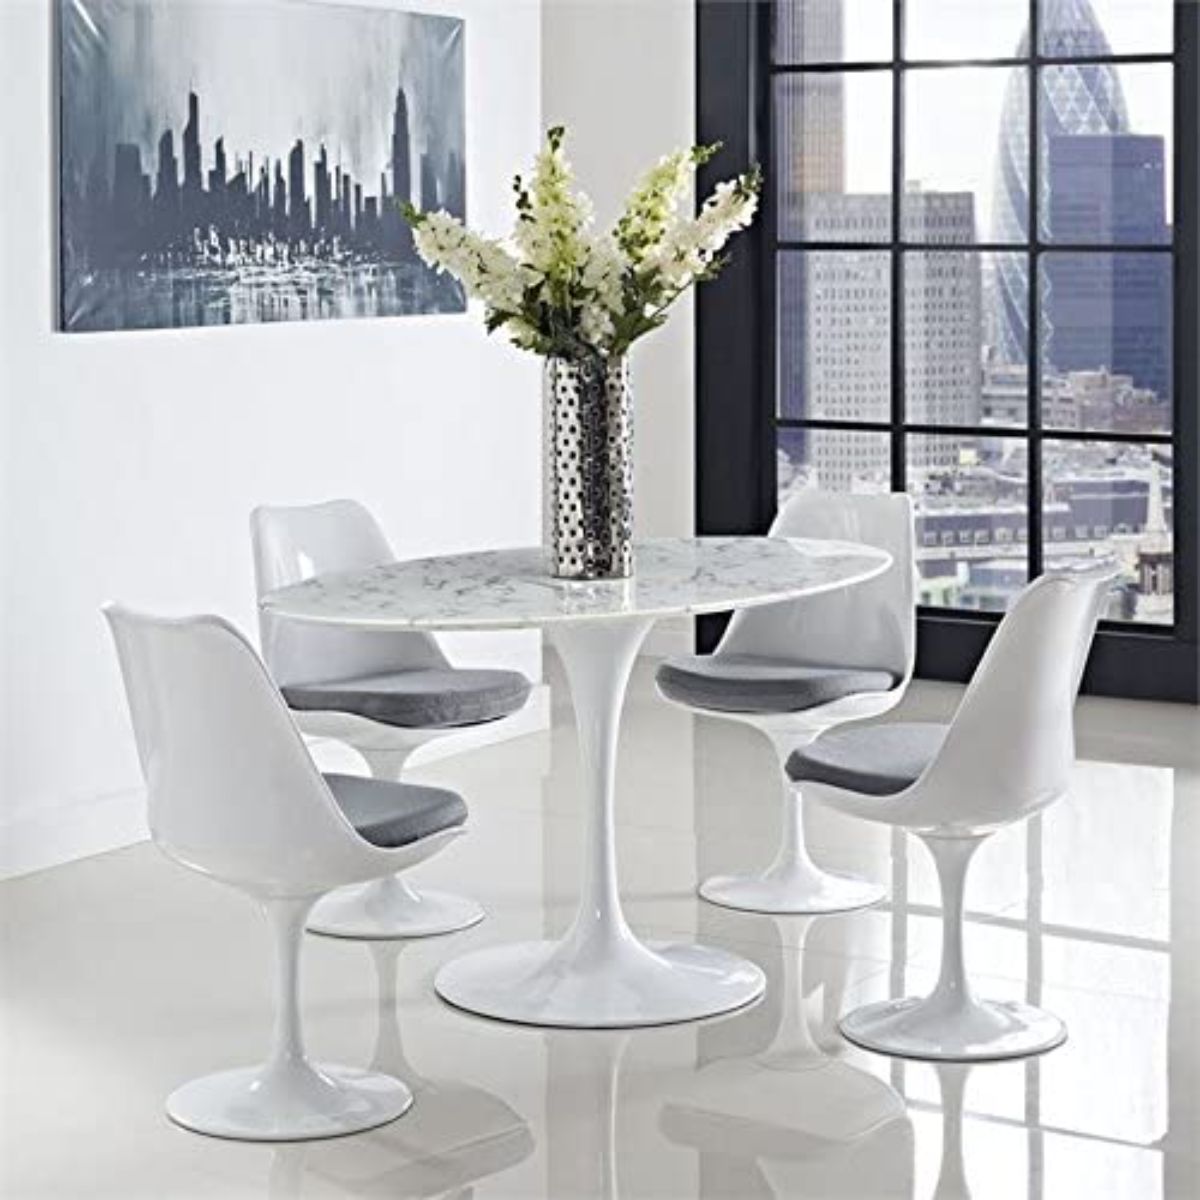 现代时尚的白色餐桌由Modway制作